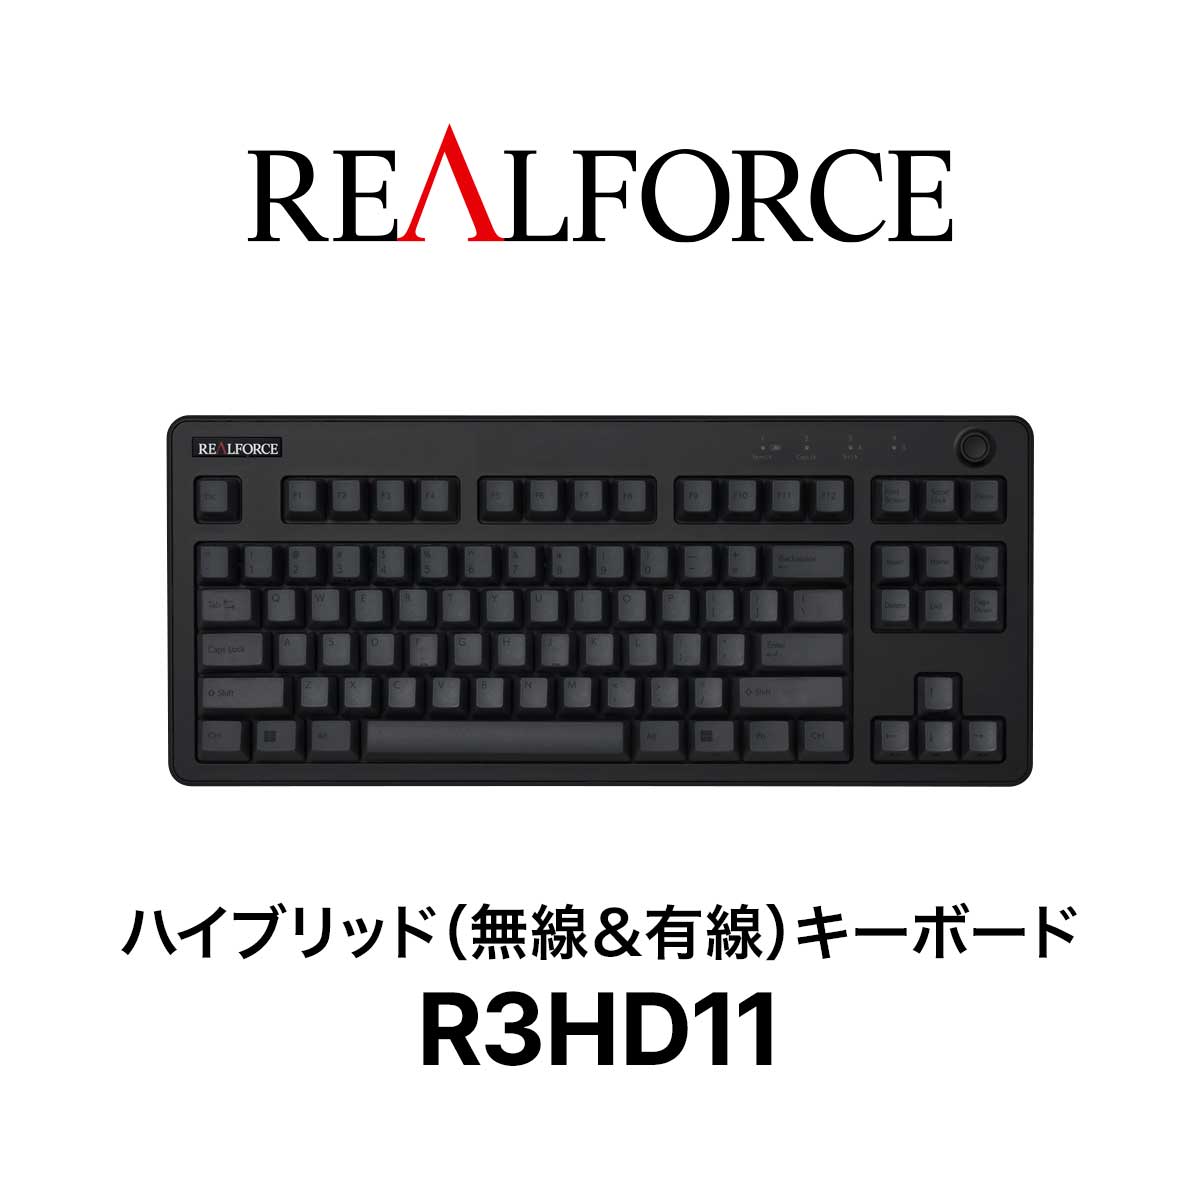 REALFORCE R3 キーボード 45g 英語配列 テンキーレス ブラック ダークグレー Bluetooth USB 静音 昇華印刷 ワイヤレス ハイブリッドモデル 無線 東プレ リアルフォース R3HD11